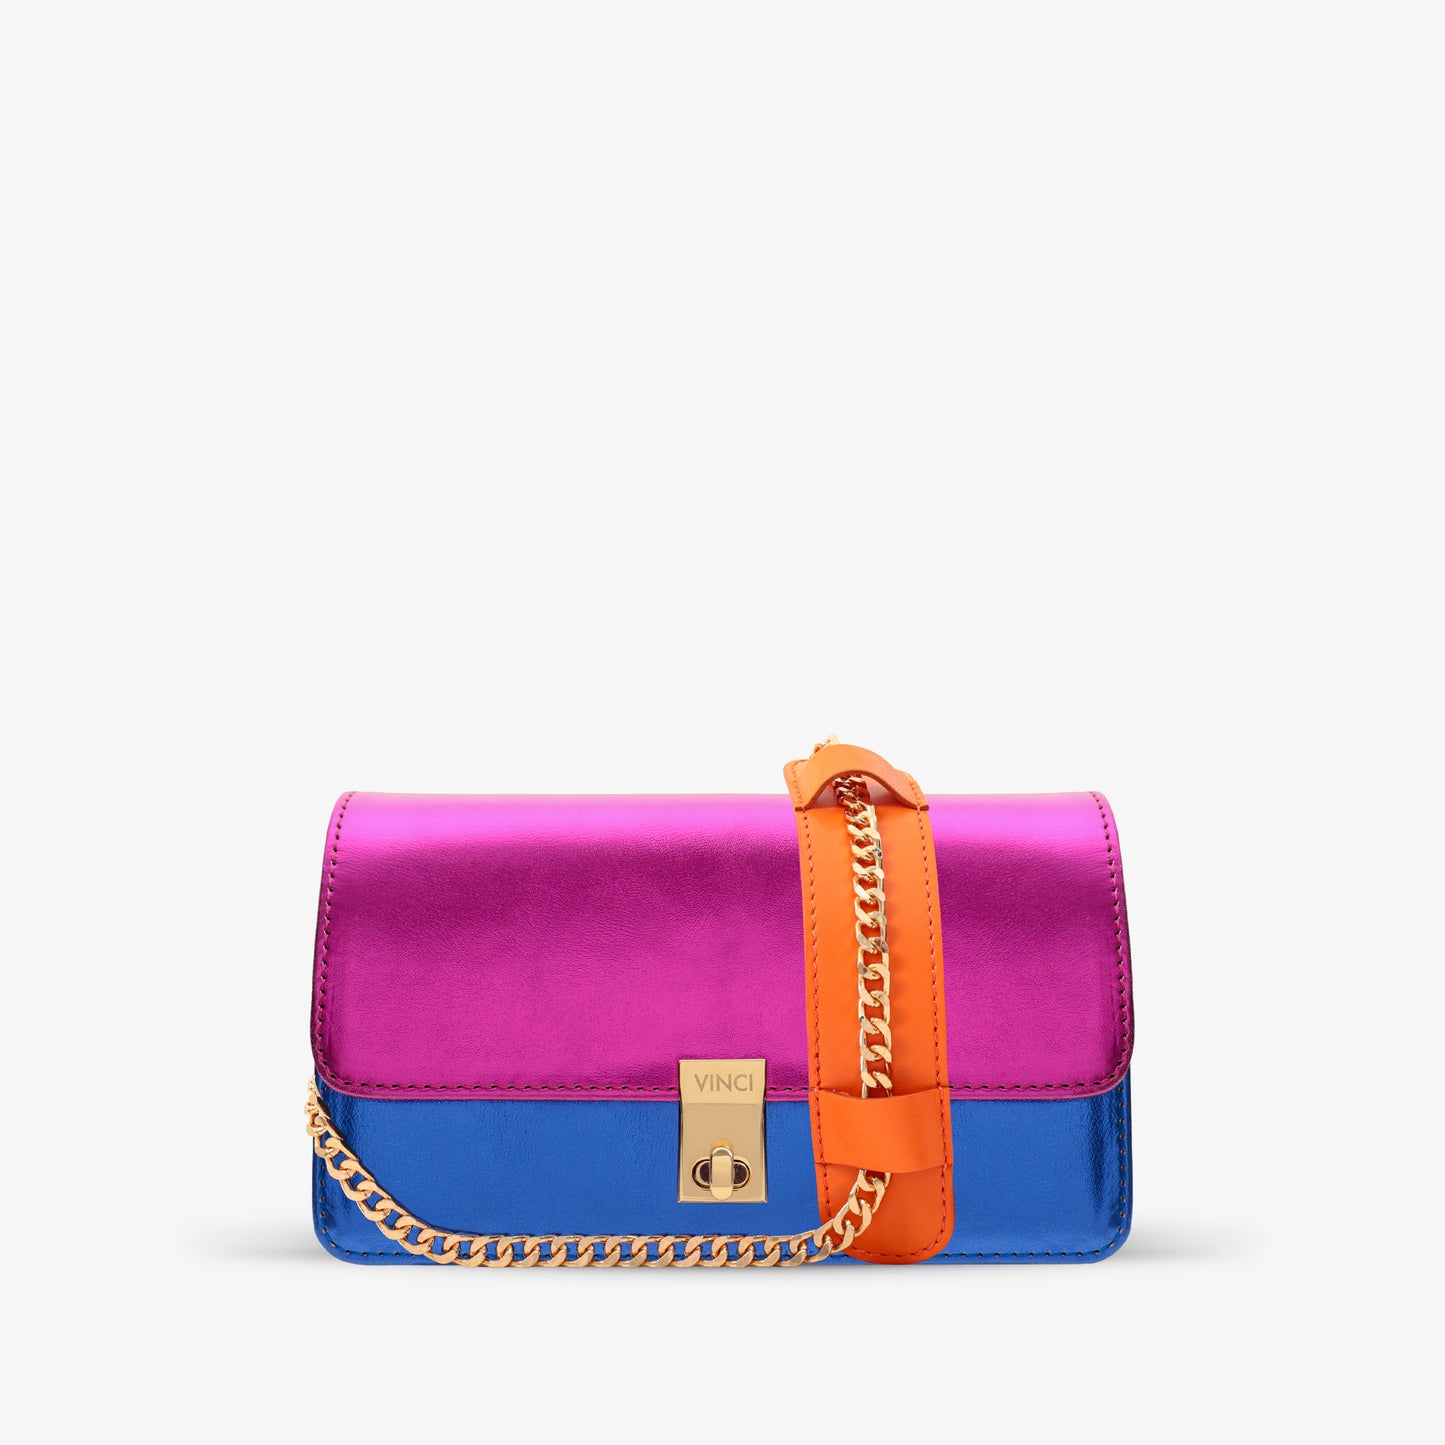 The Duffryn Multicolor Handbag